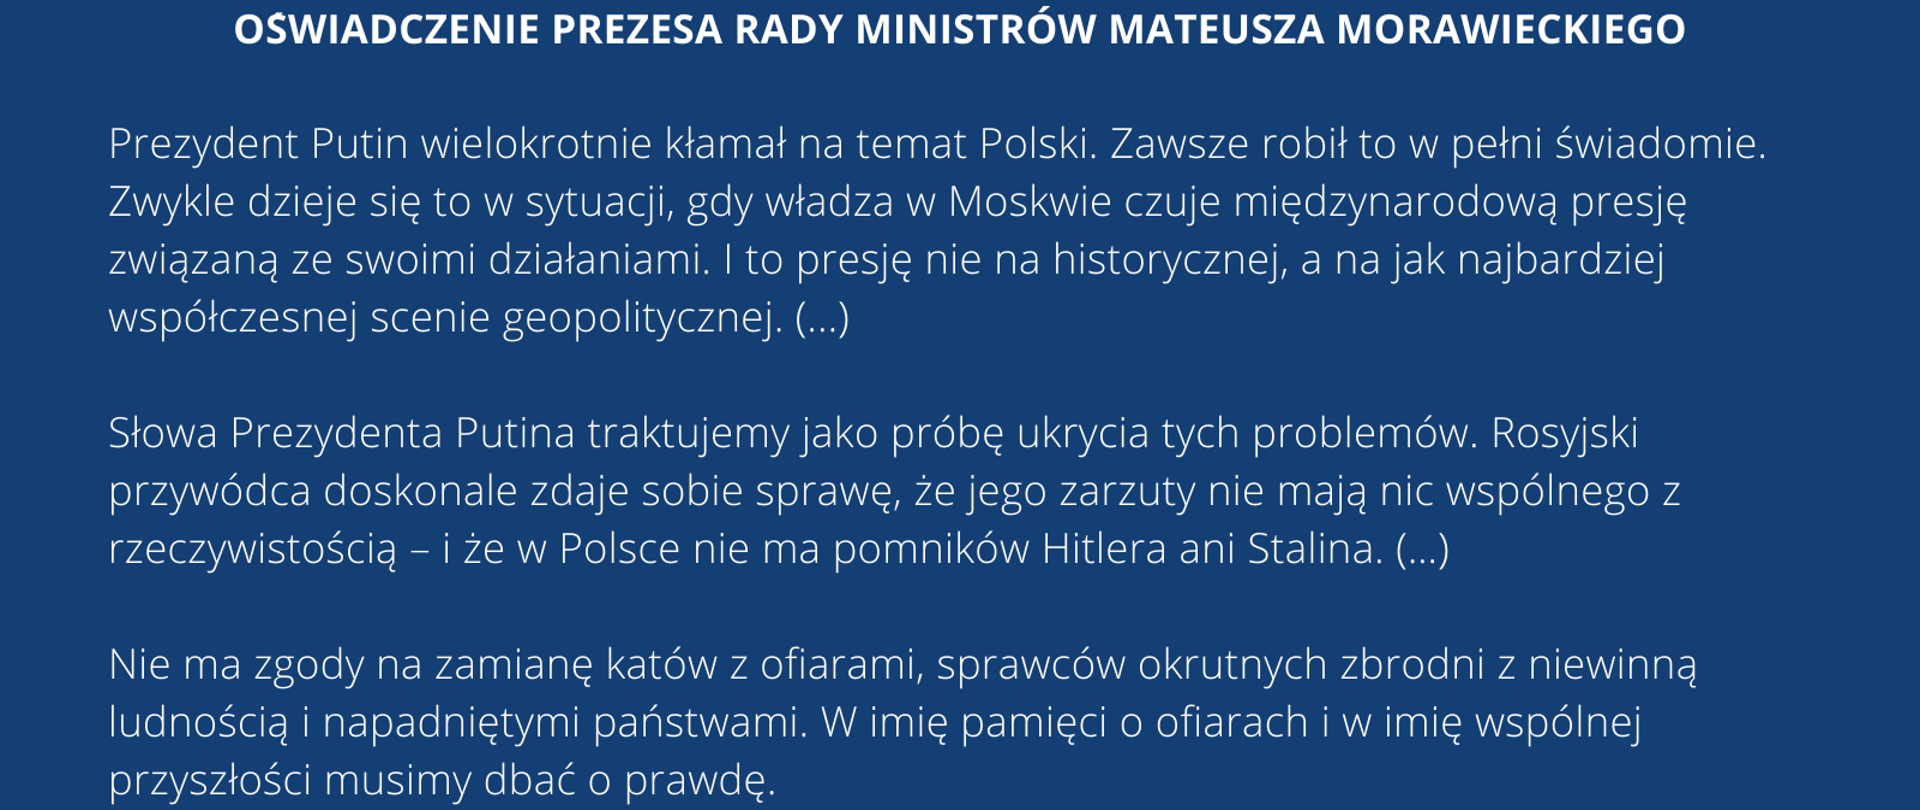 Oświadczenie Prezesa Rady Ministrów Mateusza Morawieckiego.